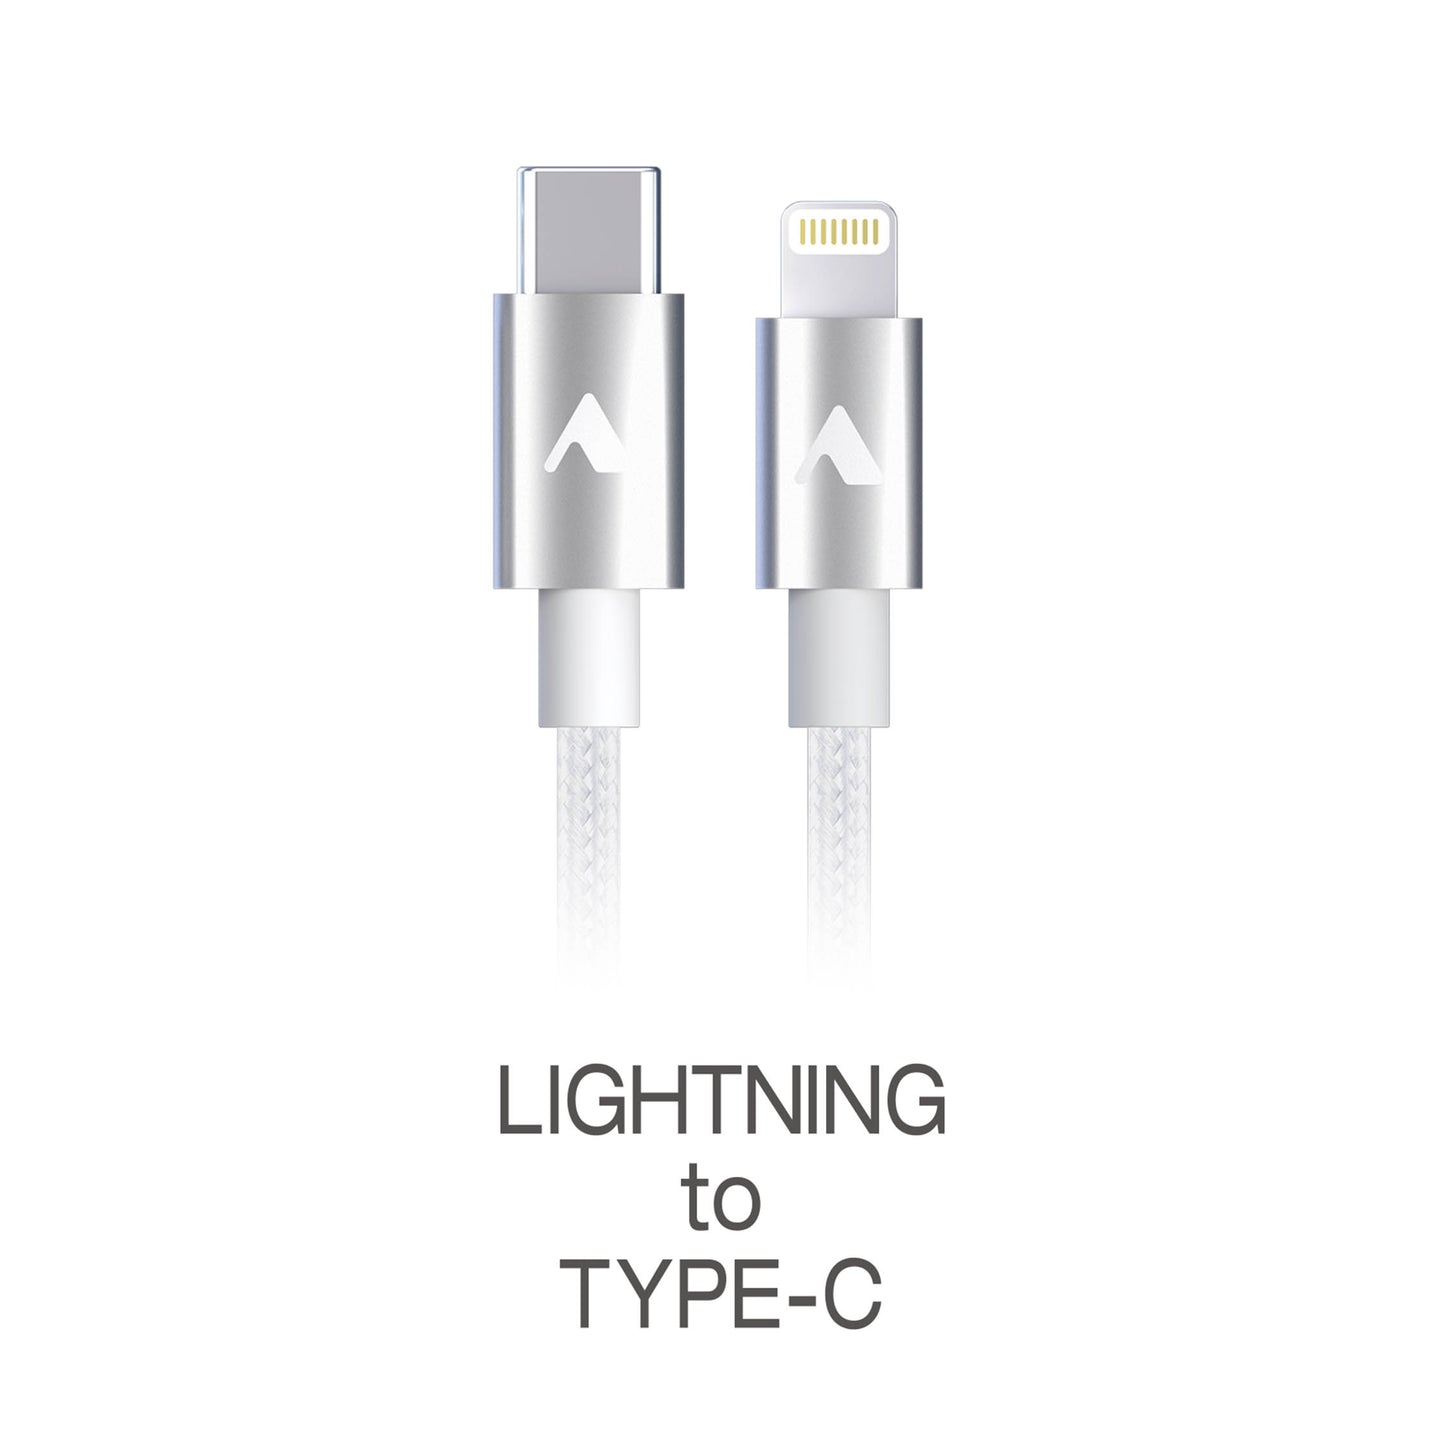 【取扱説明書】Lightning to TYPE-C充電ケーブル[LAC-M100]